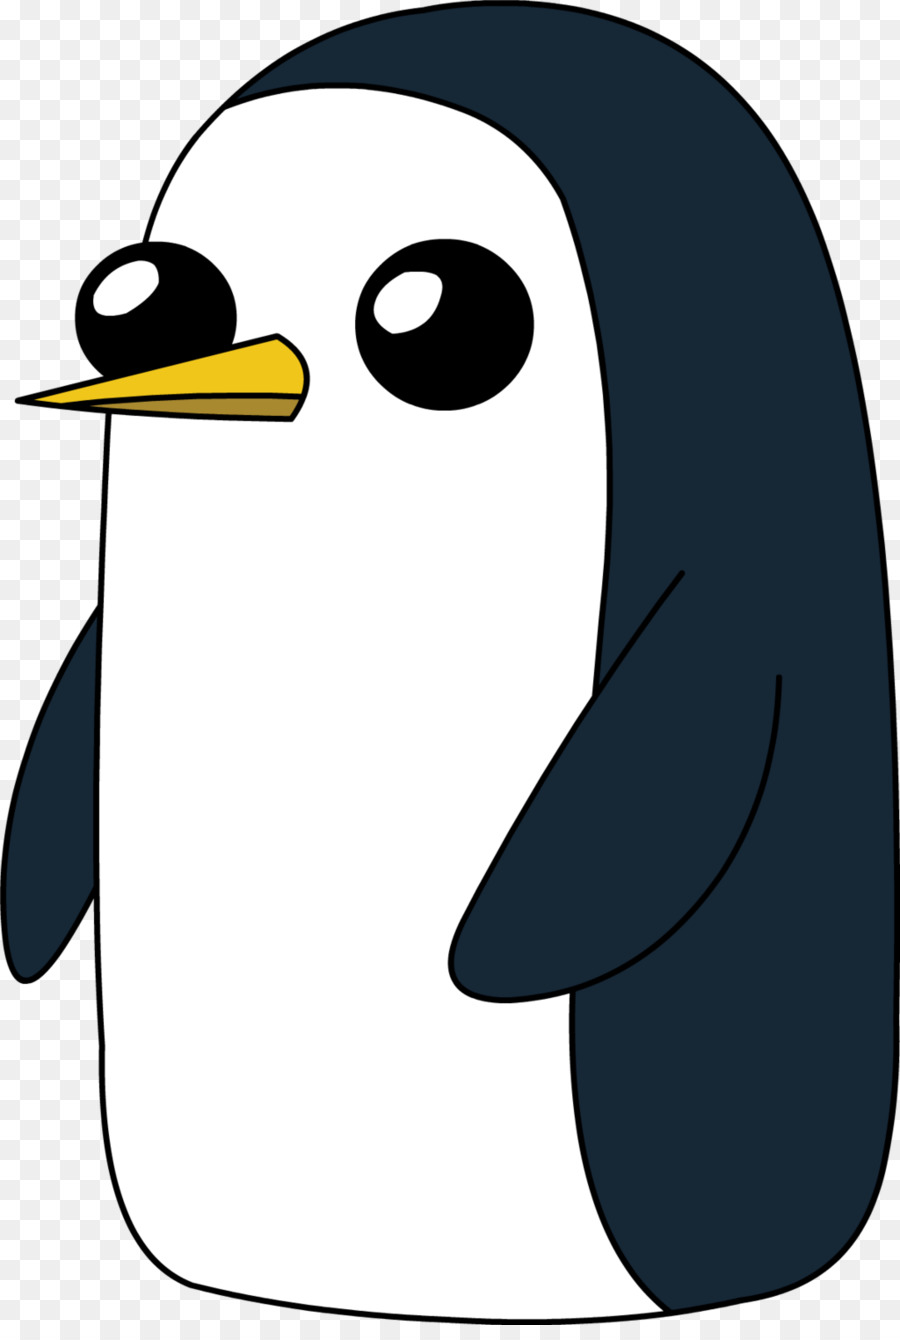 Pinguino imperatore di Ghiaccio Re Finn l'Umano Disegno - pinguini